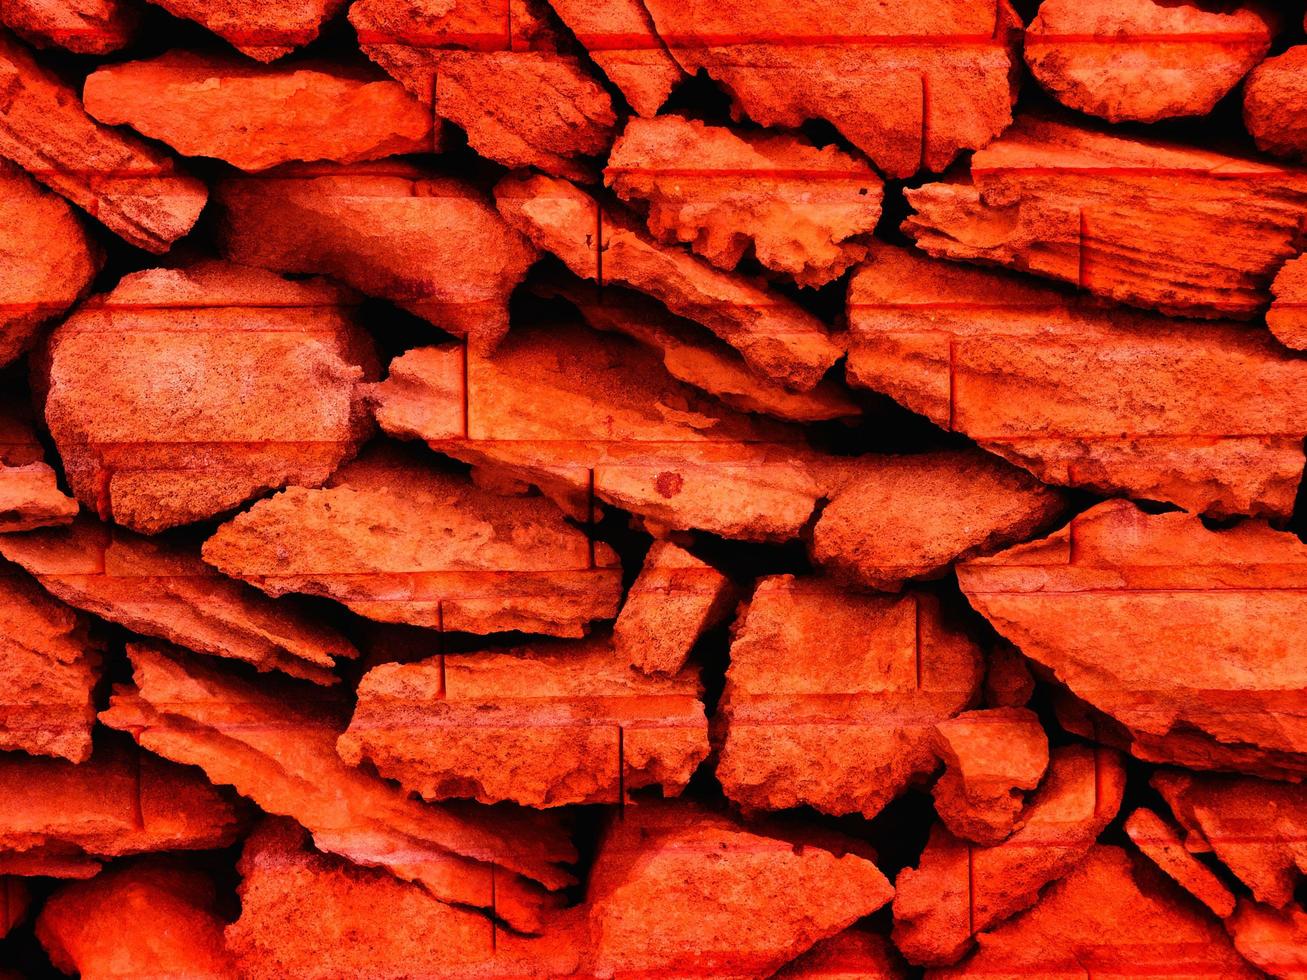 rode steen textuur foto